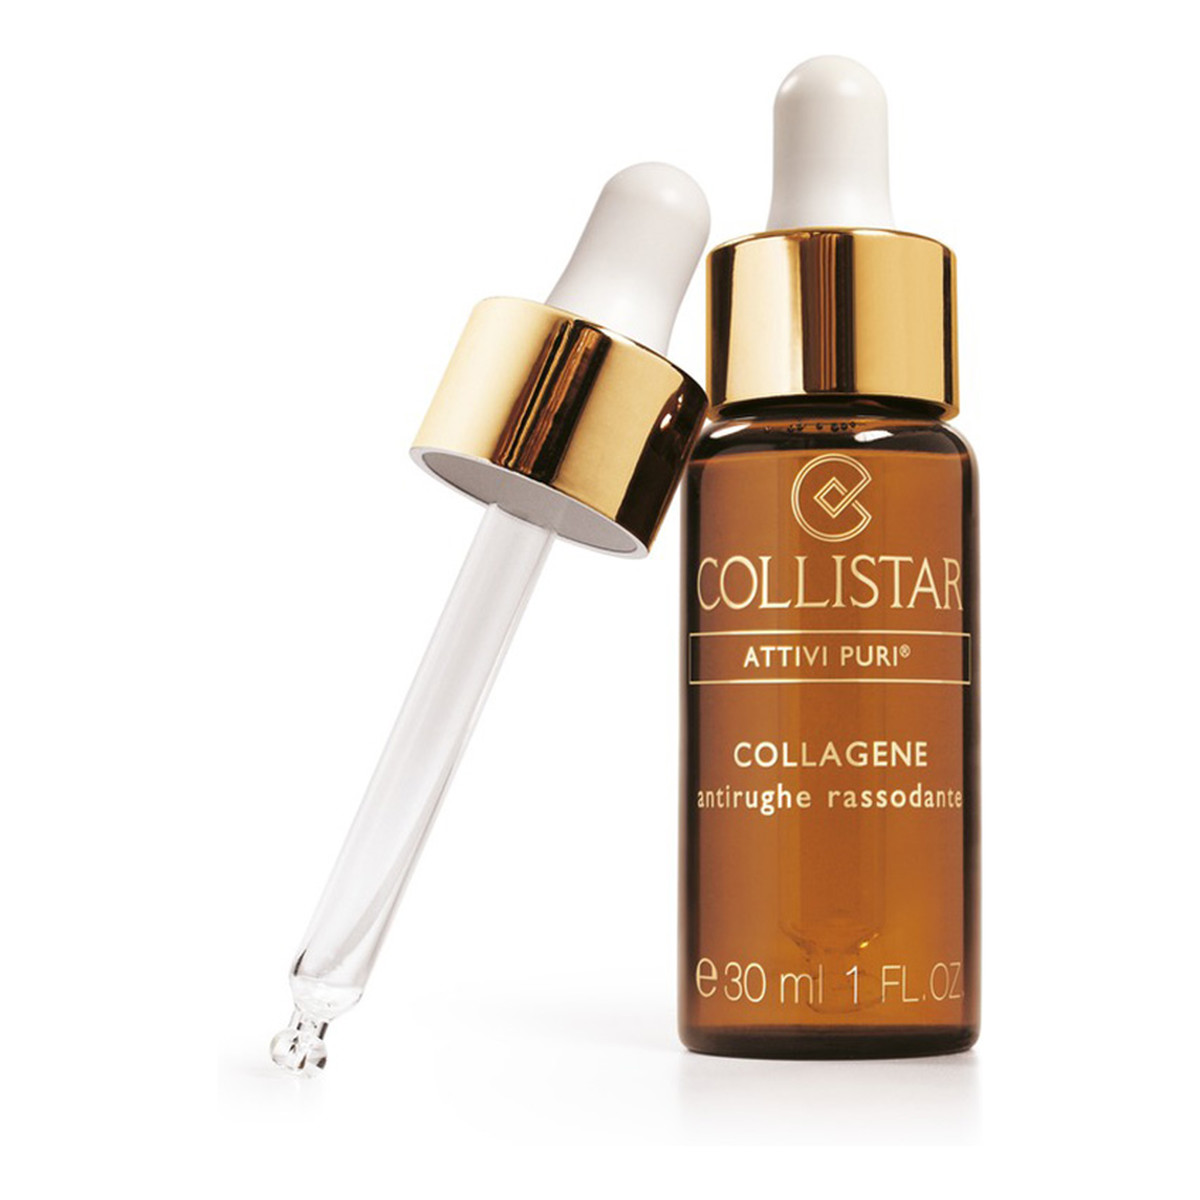 Collistar Attivi Puri Collagen Anti-Wrinkle Firming Koncentrat ujędrniający z kolagenem 30ml